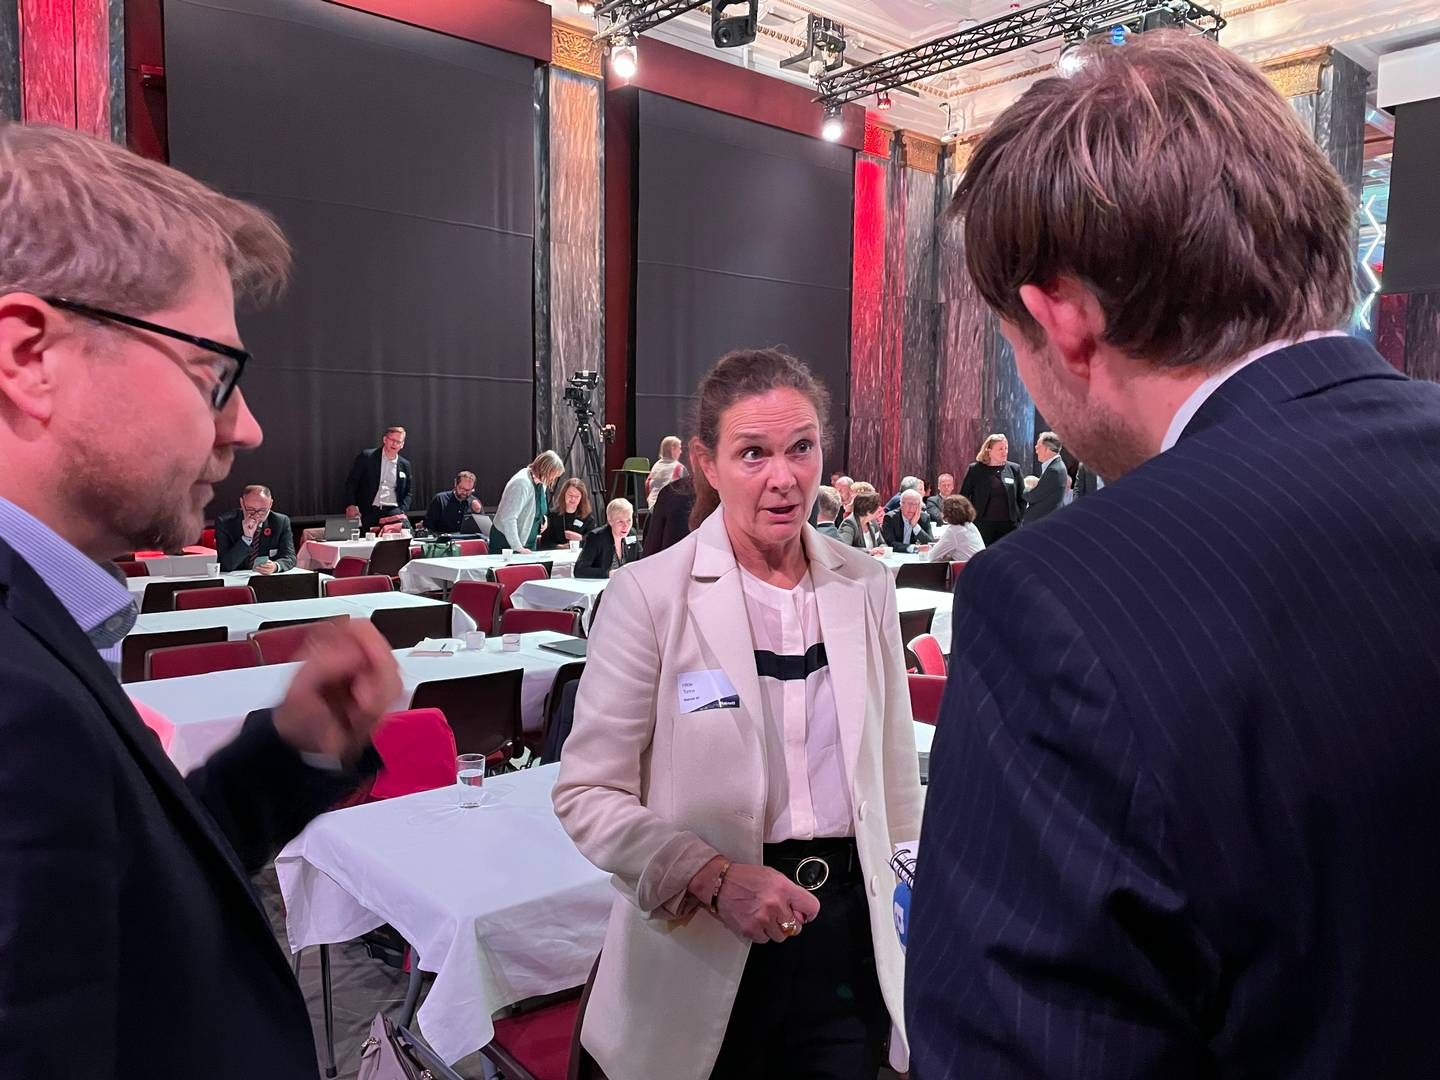 UROLIG: Hilde Tonne, her i samtale med Finansavisen under Statnetts høstkonferanse. | Foto: Lars Heltne